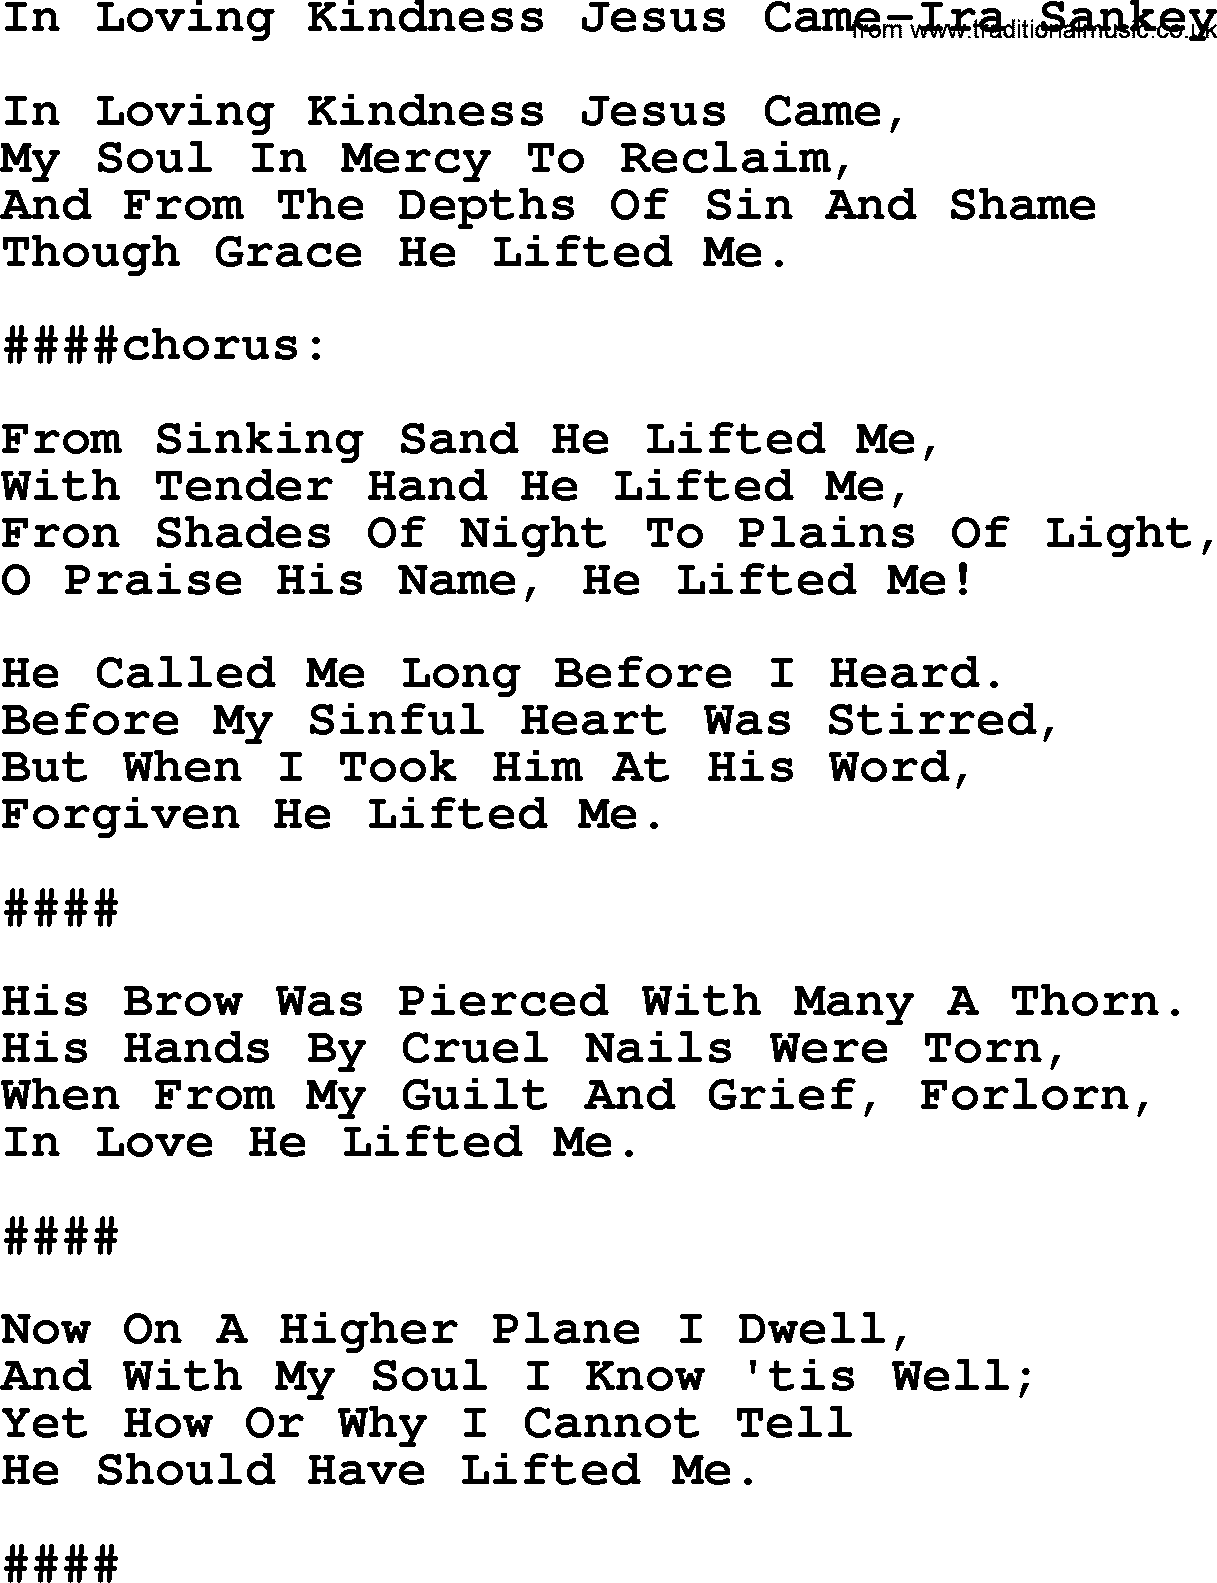 Ira Sankey hymn: In Loving Kindness Jesus Came-Ira Sankey, lyrics